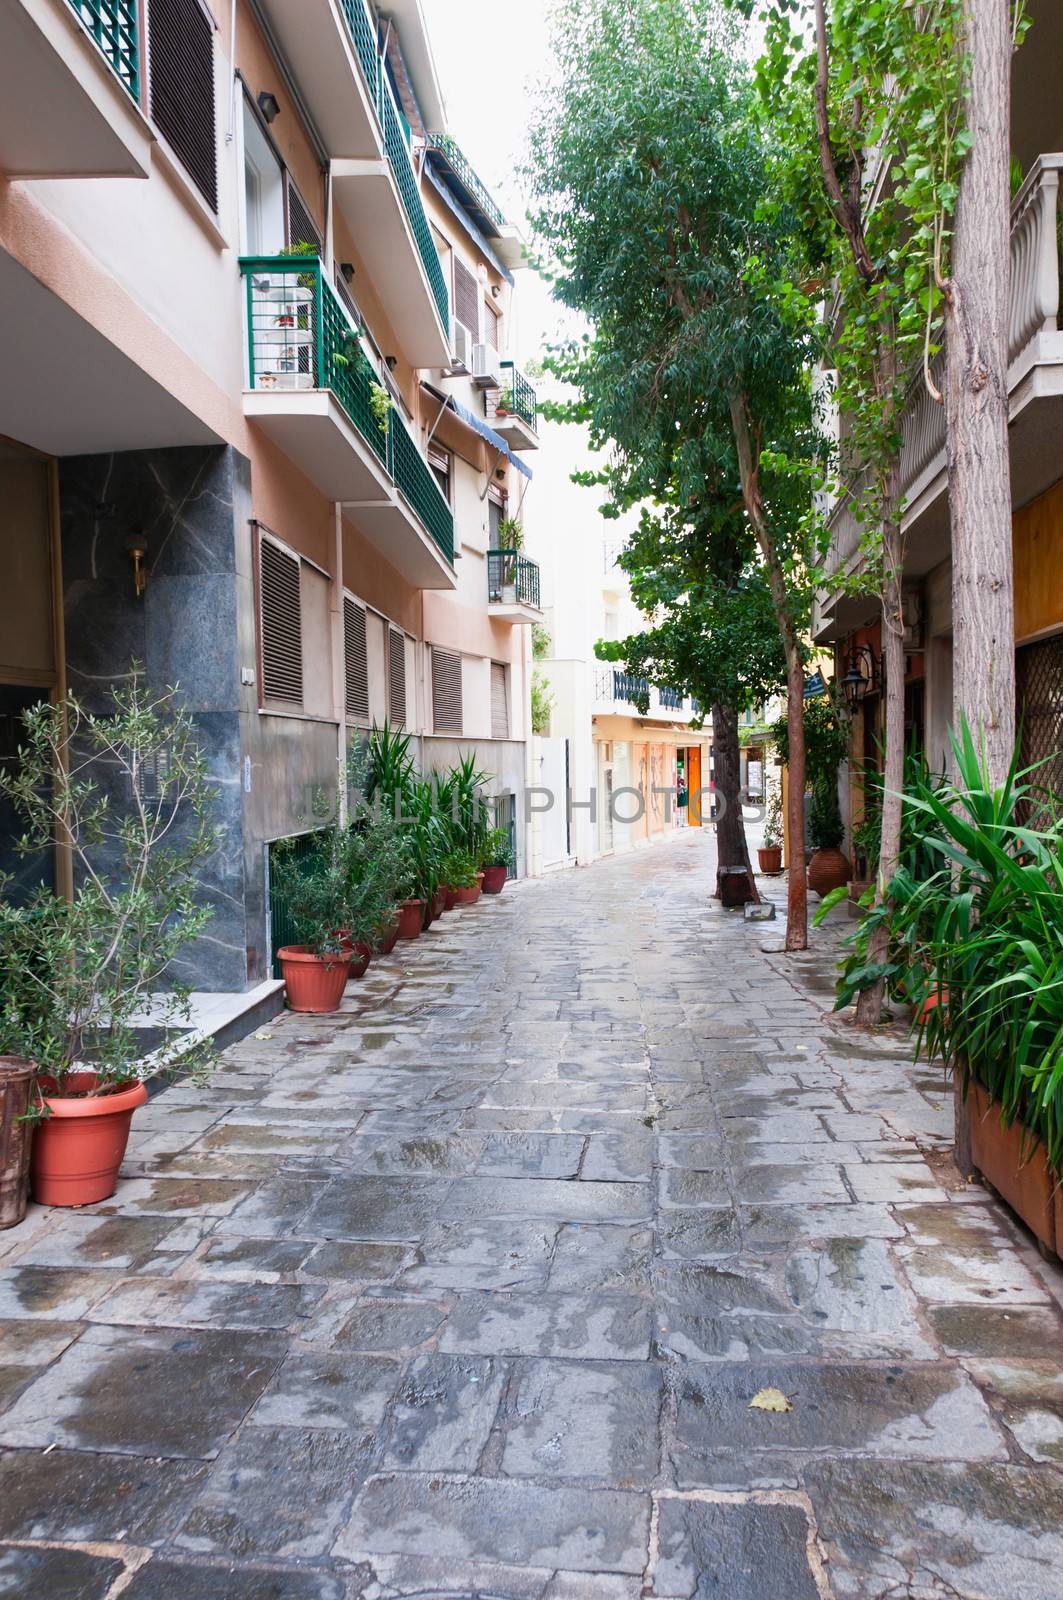 Athens narrow street, old town - Plaka, Greece